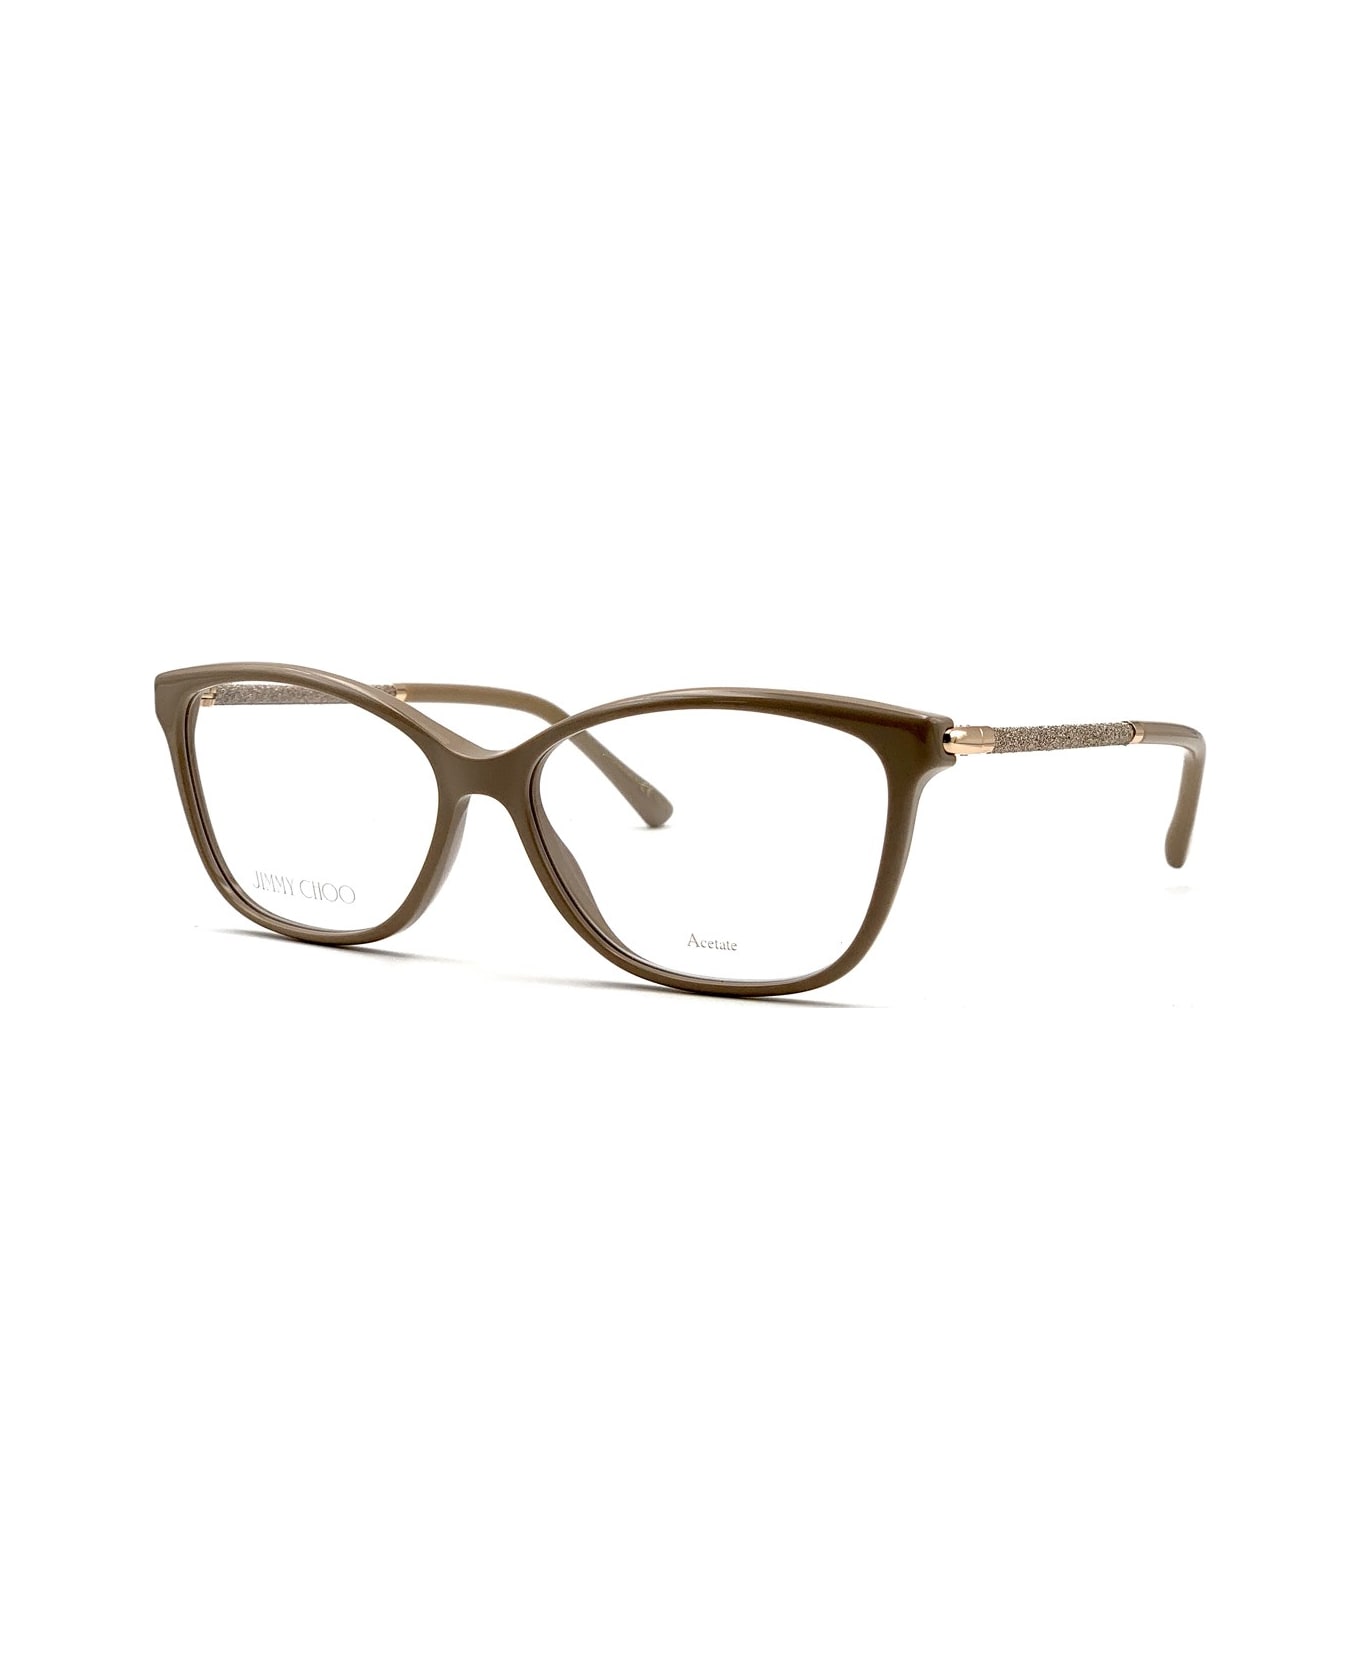 Jimmy Choo Eyewear Jc320 Glasses - Beige